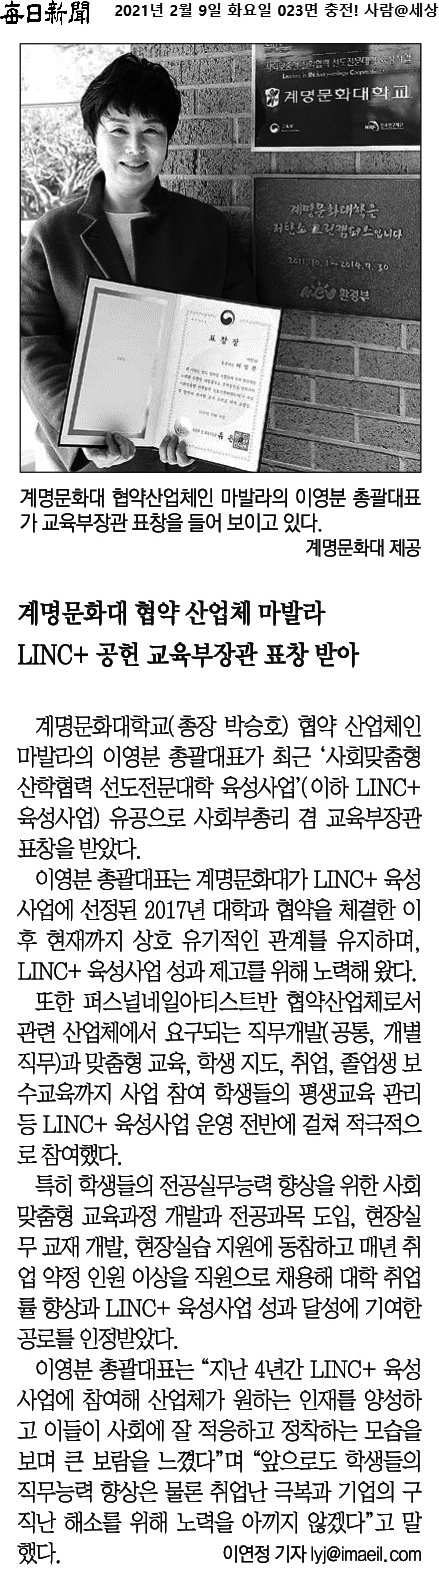 LINC+ 협약 산업체 대표 교육부 장관 표창 수상